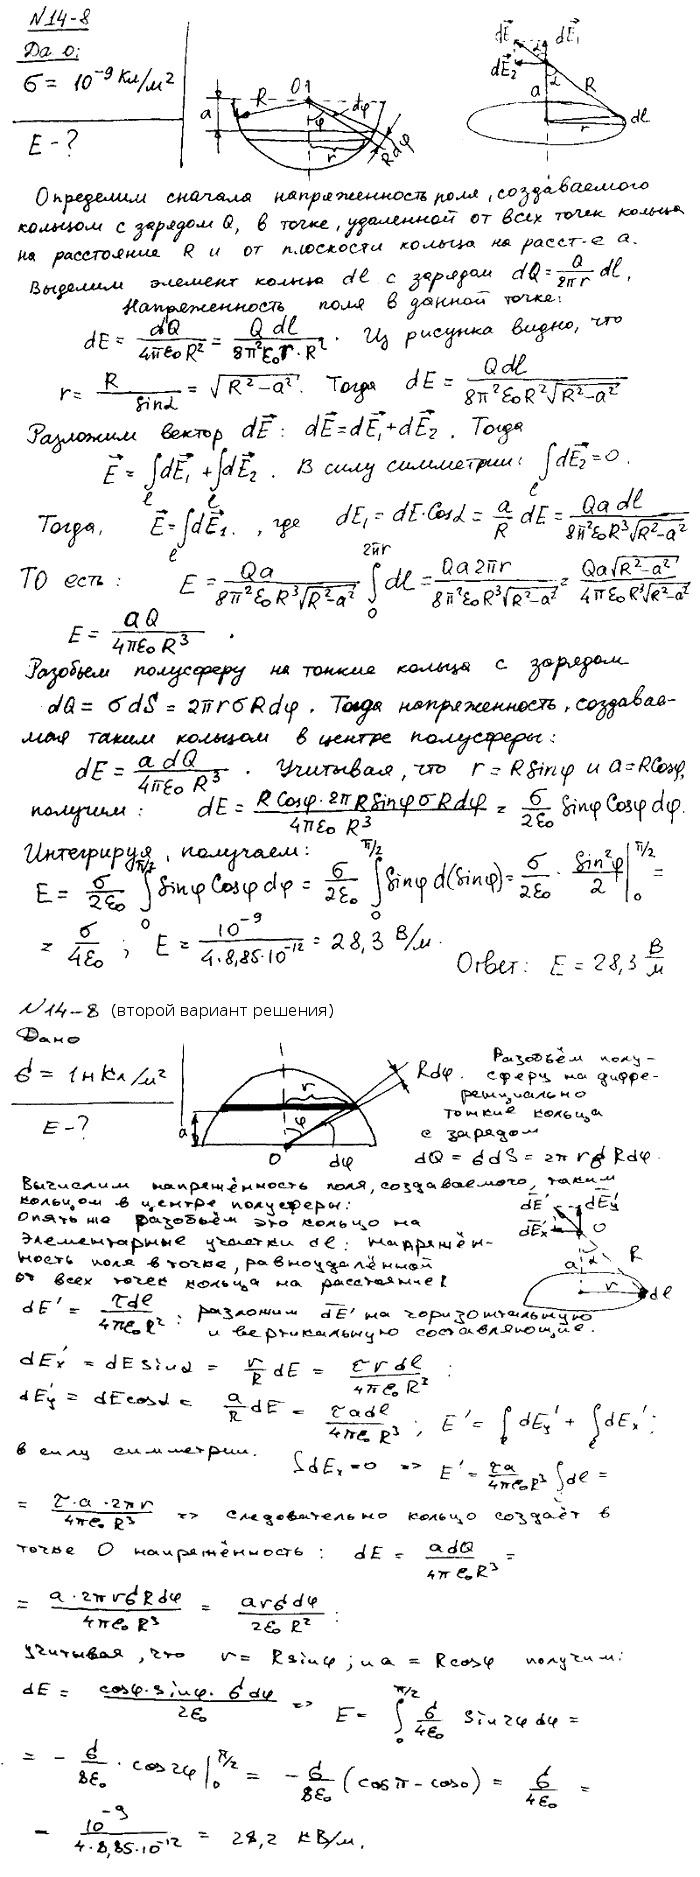 Полусфера несет заряд, равномерно распределенный с поверхностной плотностью σ=1 нКл/м^2. Найти напряженность E электрического поля в геометрическом